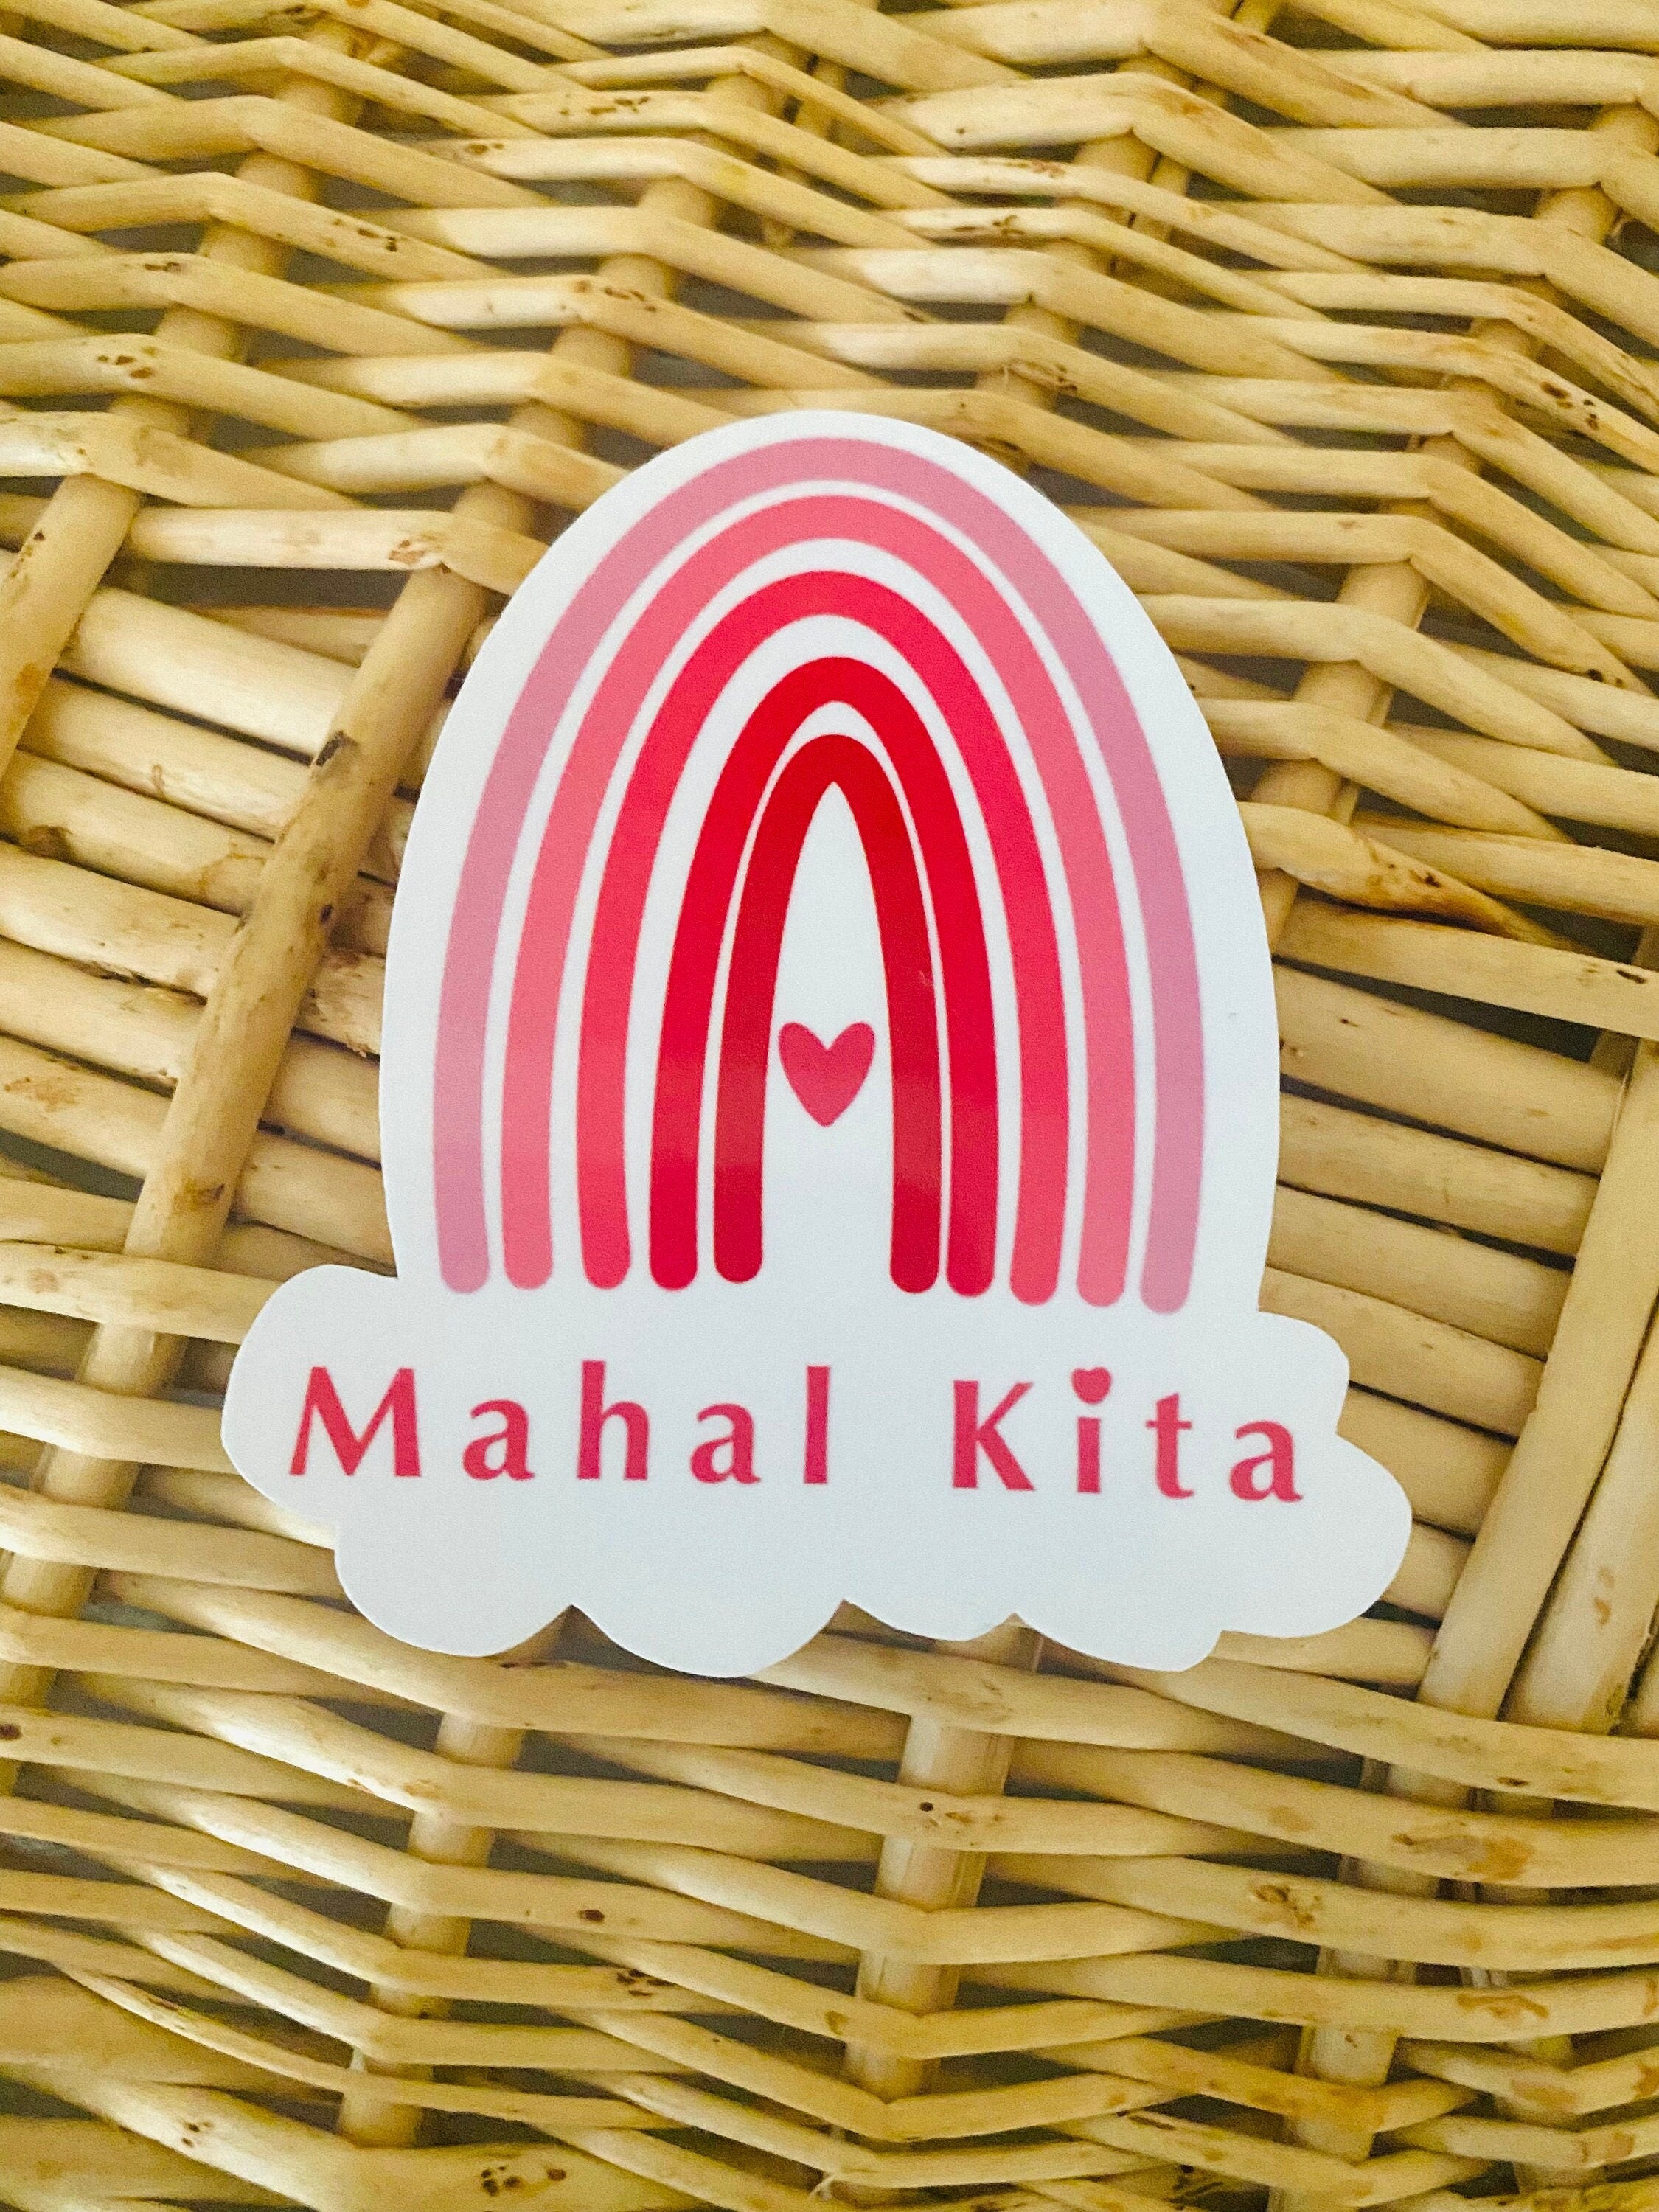 Mie Makes Mahal Kita Sticker, Rainbow Sticker, Filipino Sticker, Valentine's Day Sticker, Sticker for Her, Heart Sticker, Filipina, Red Rainbow, Pinay